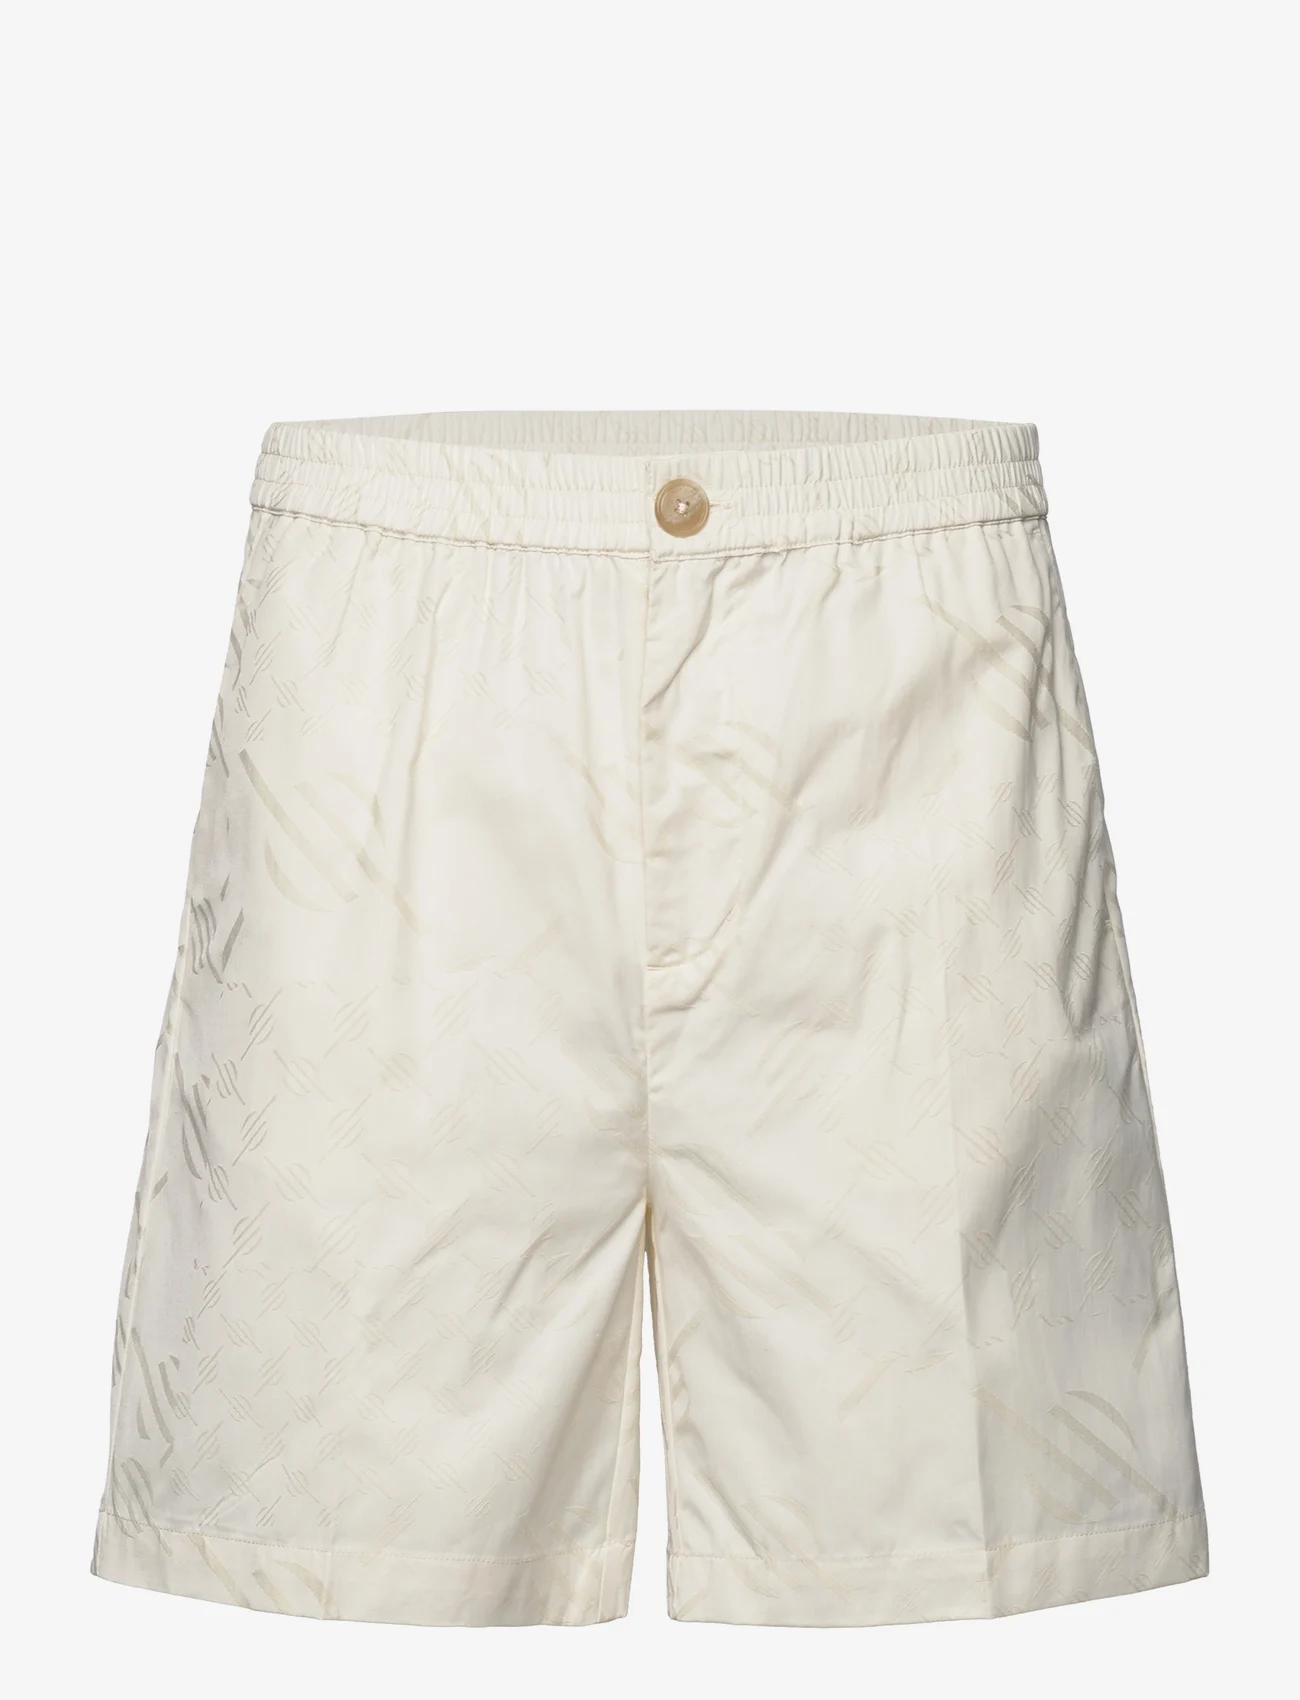 Daily Paper - piam shorts - chino-shortsit - egret white - 0